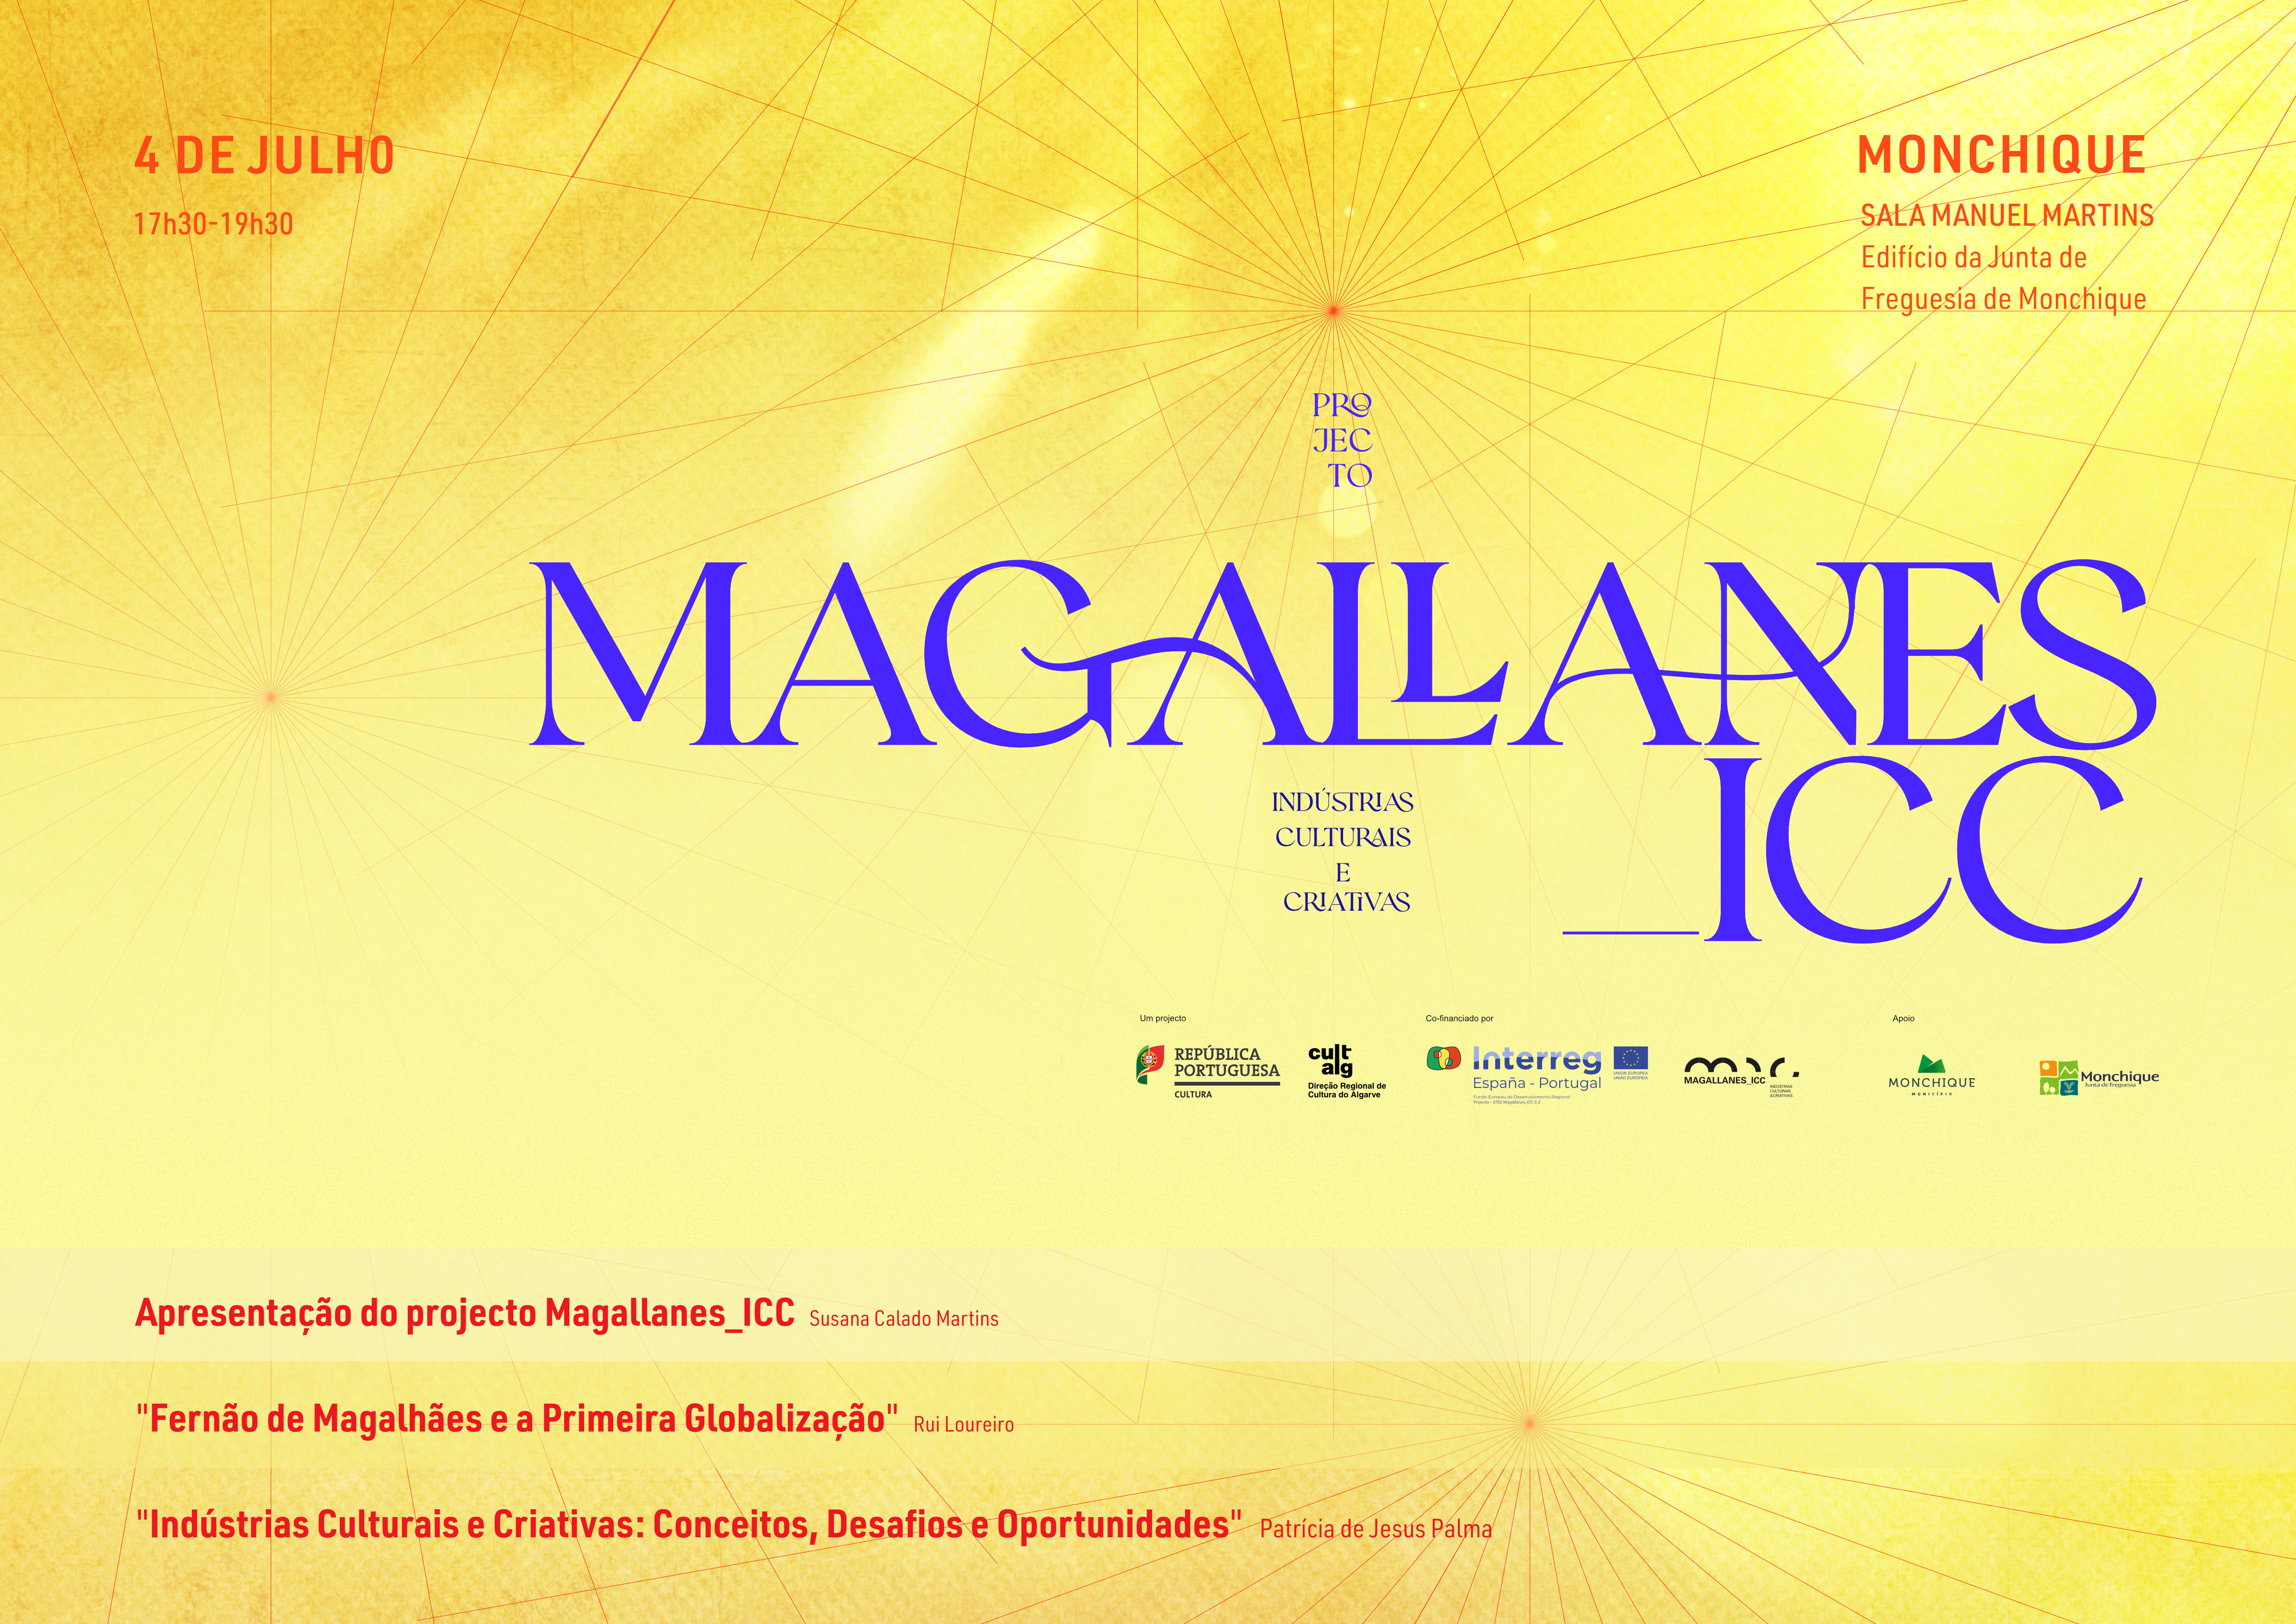 DRCAlg apresenta as atividades no âmbito do projeto  Magallanes_ICC  à comunidade, no próximo dia 4 de julho, em Monchique